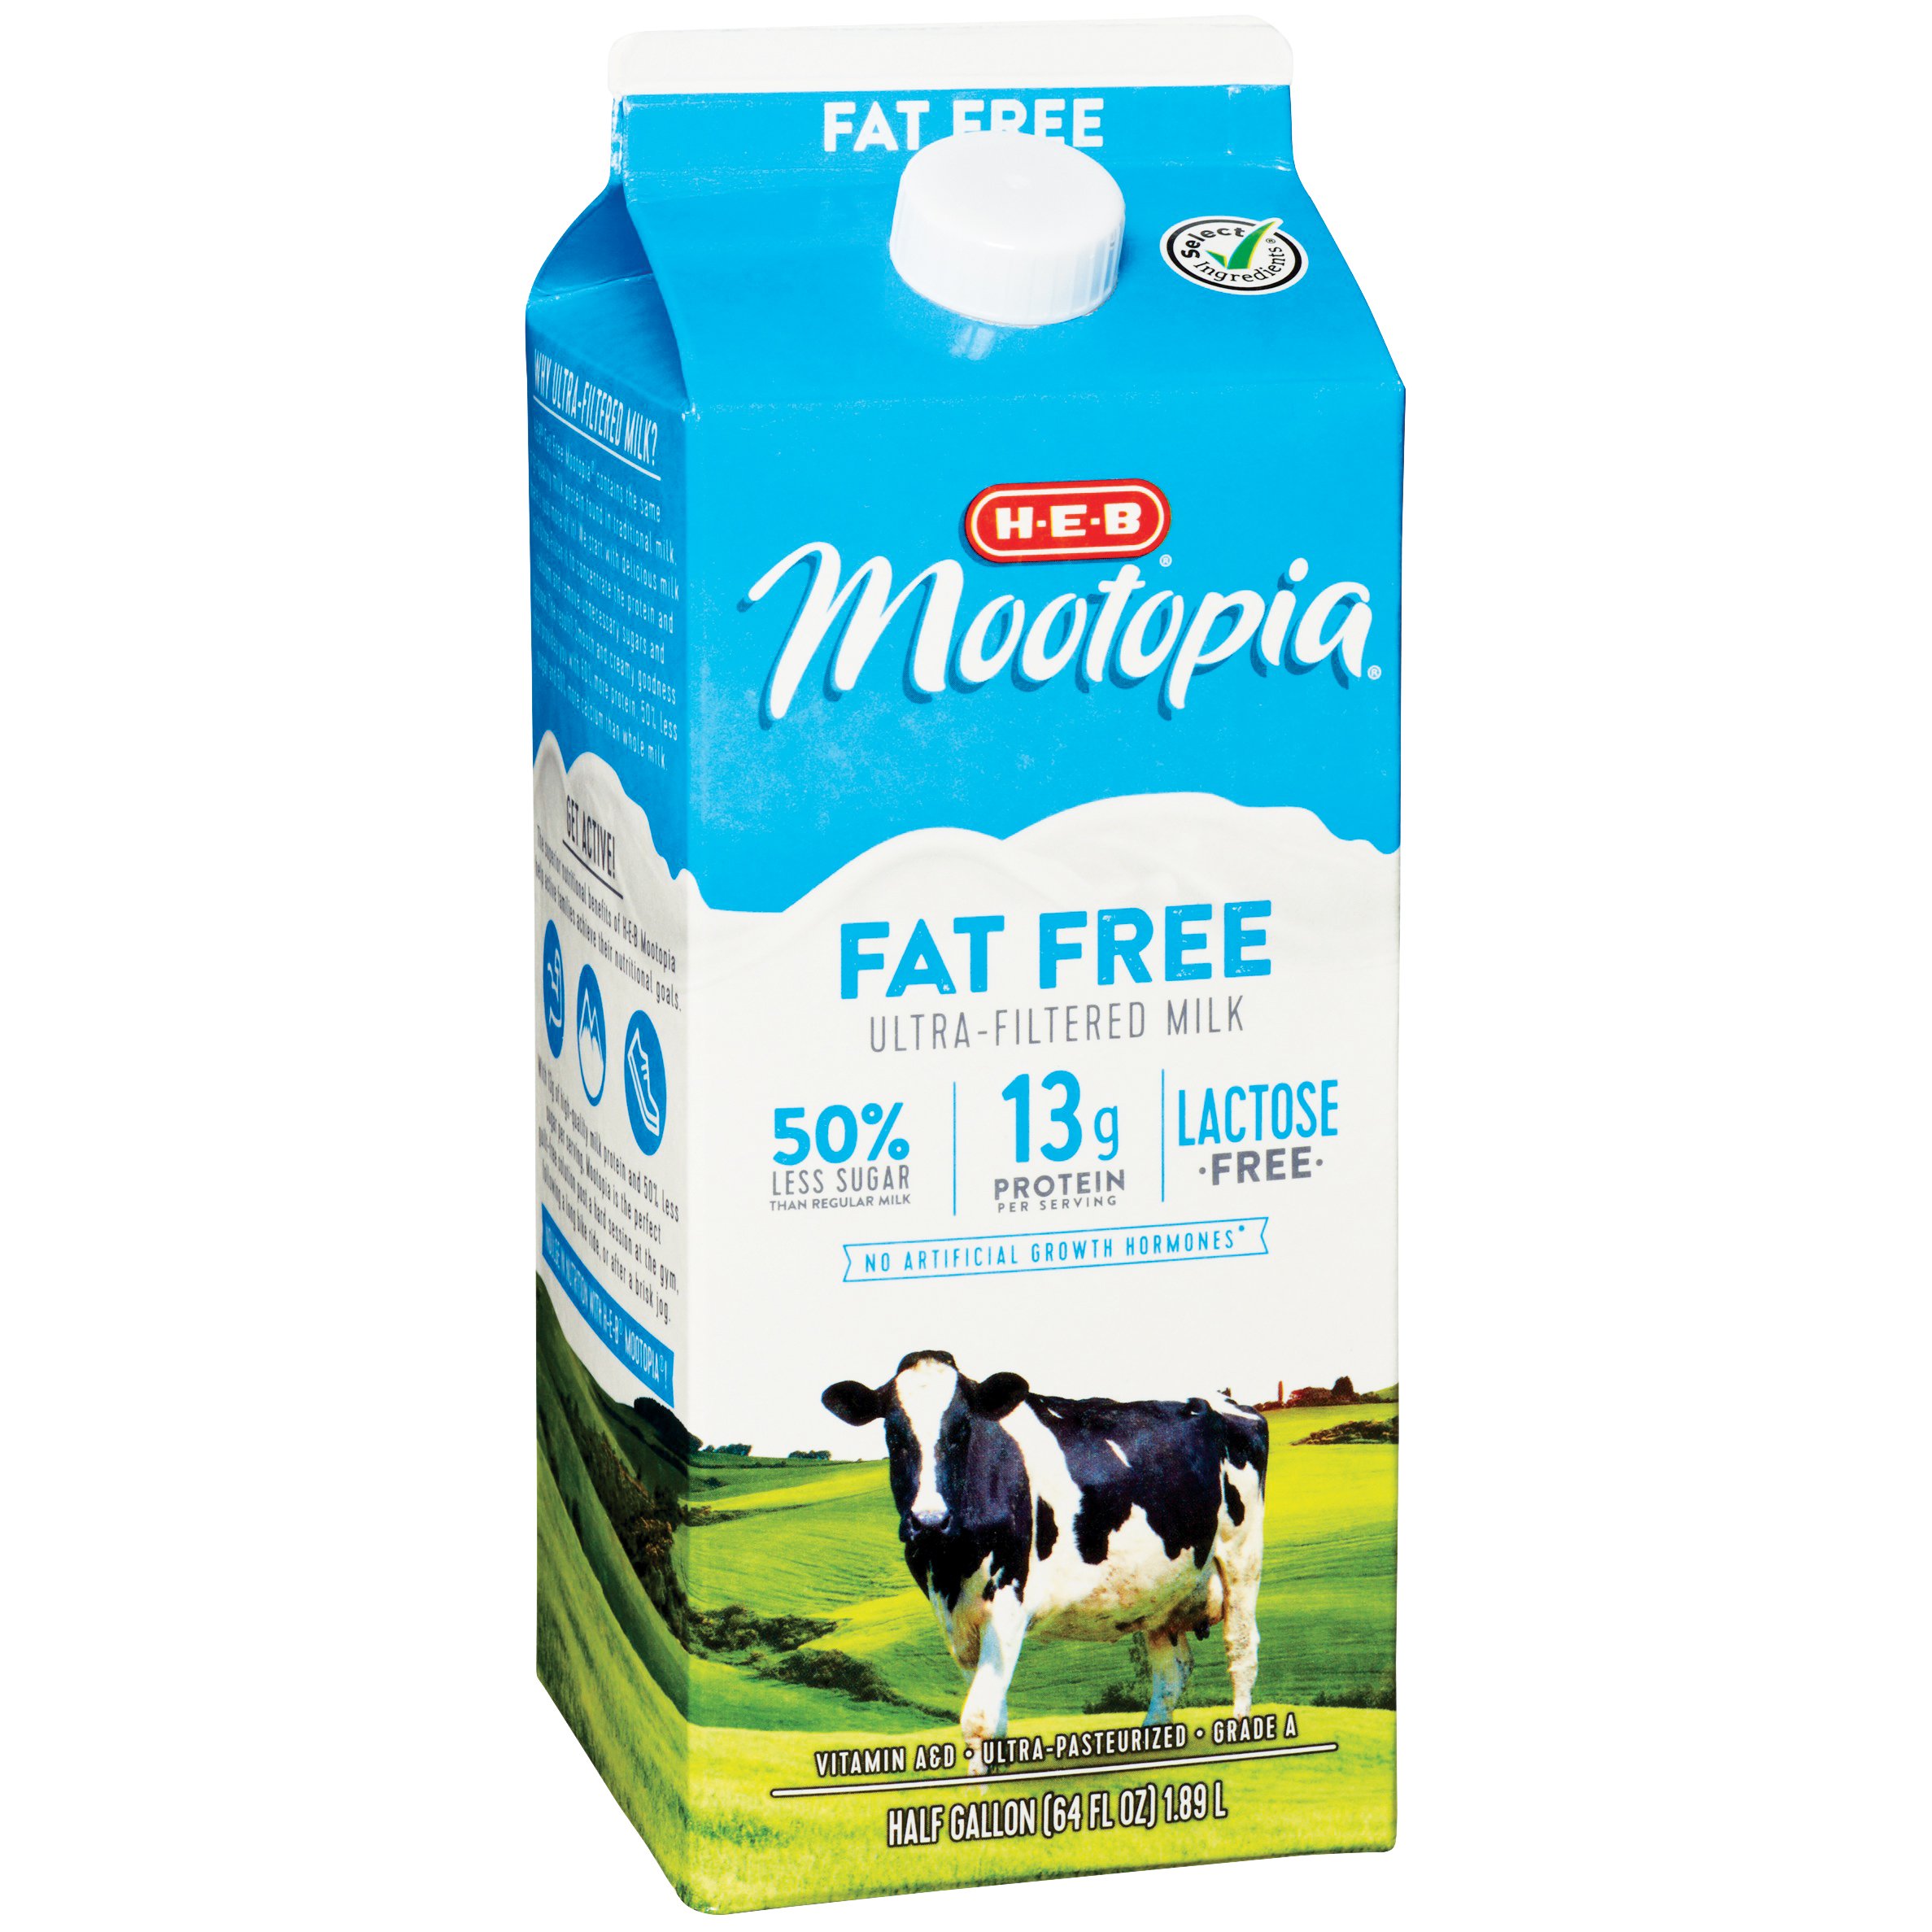 H-E-B Mootopia Lactose-Free Fat-Free Milk - Shop Milk at H-E-B